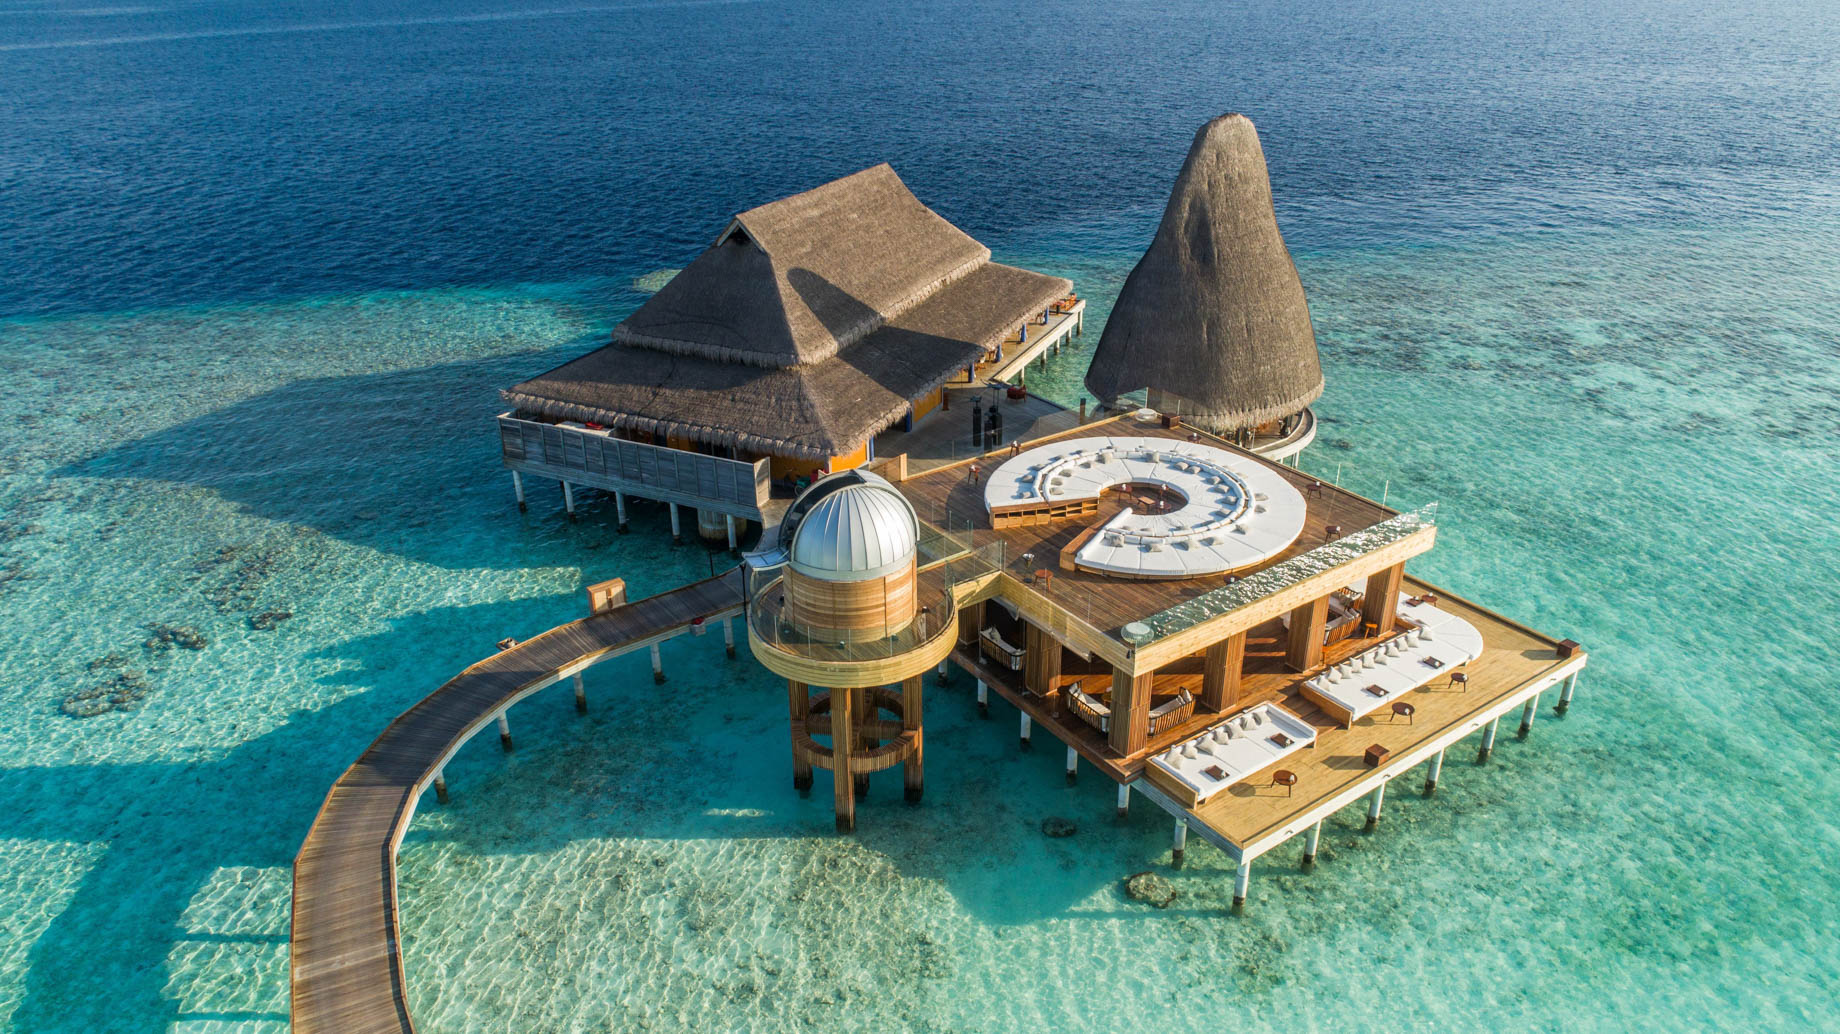 Anantara Kihavah Maldives Villas Resort - Baa Atoll, Maldives - Overwater Observatory and Bar SEA.FIRE.SPICE.SKY. Aerial View